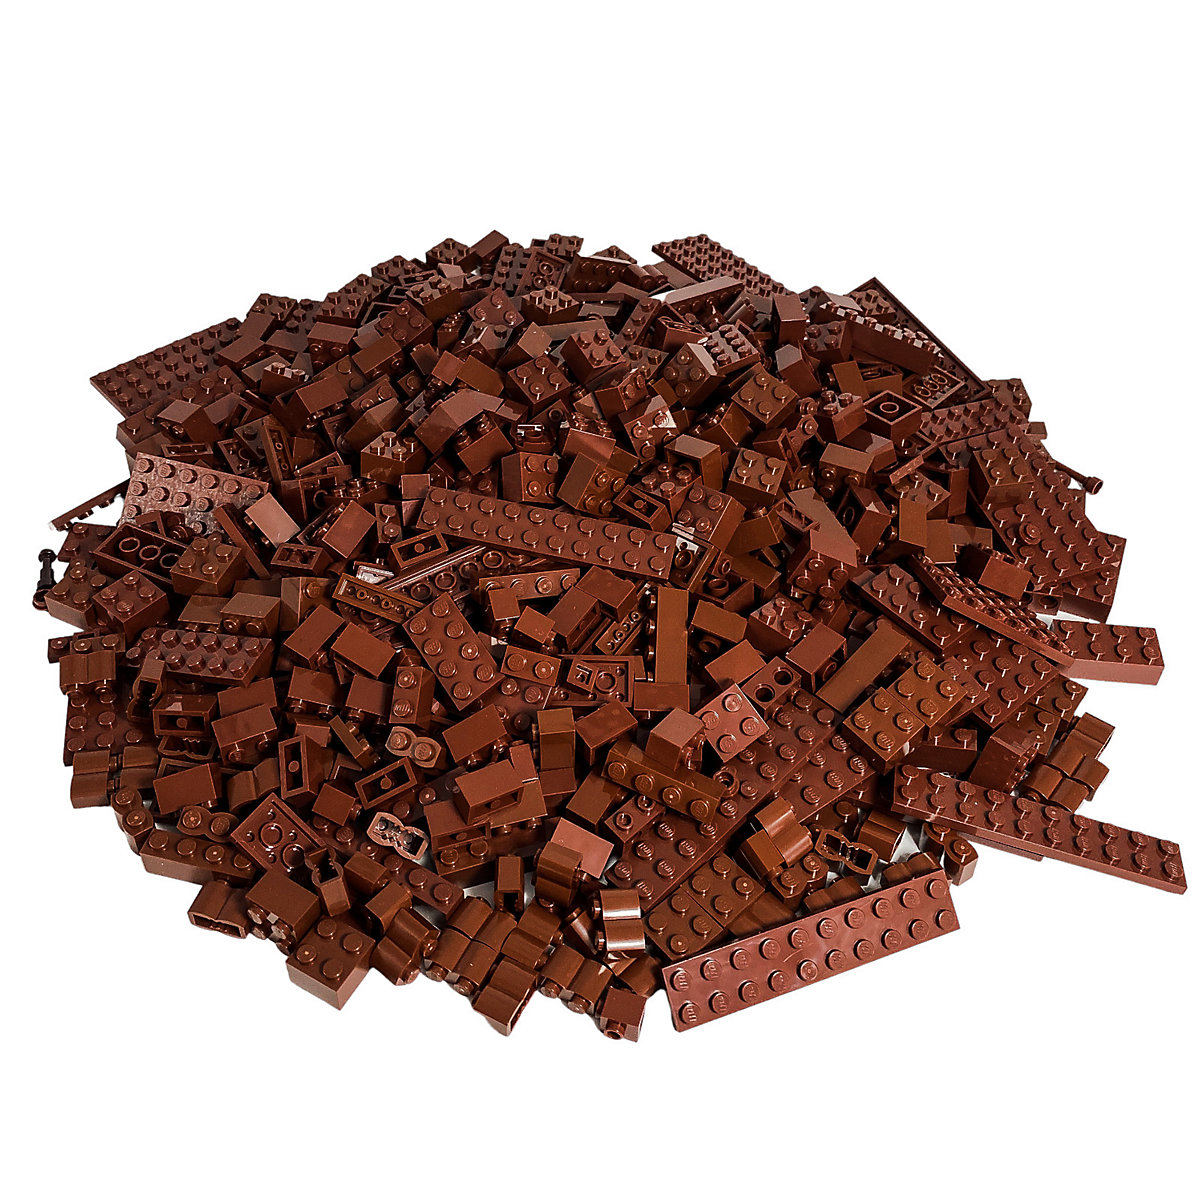 LEGO® Steine Braun gemischt 400 Stück Reddish Brown bricks mix NEU